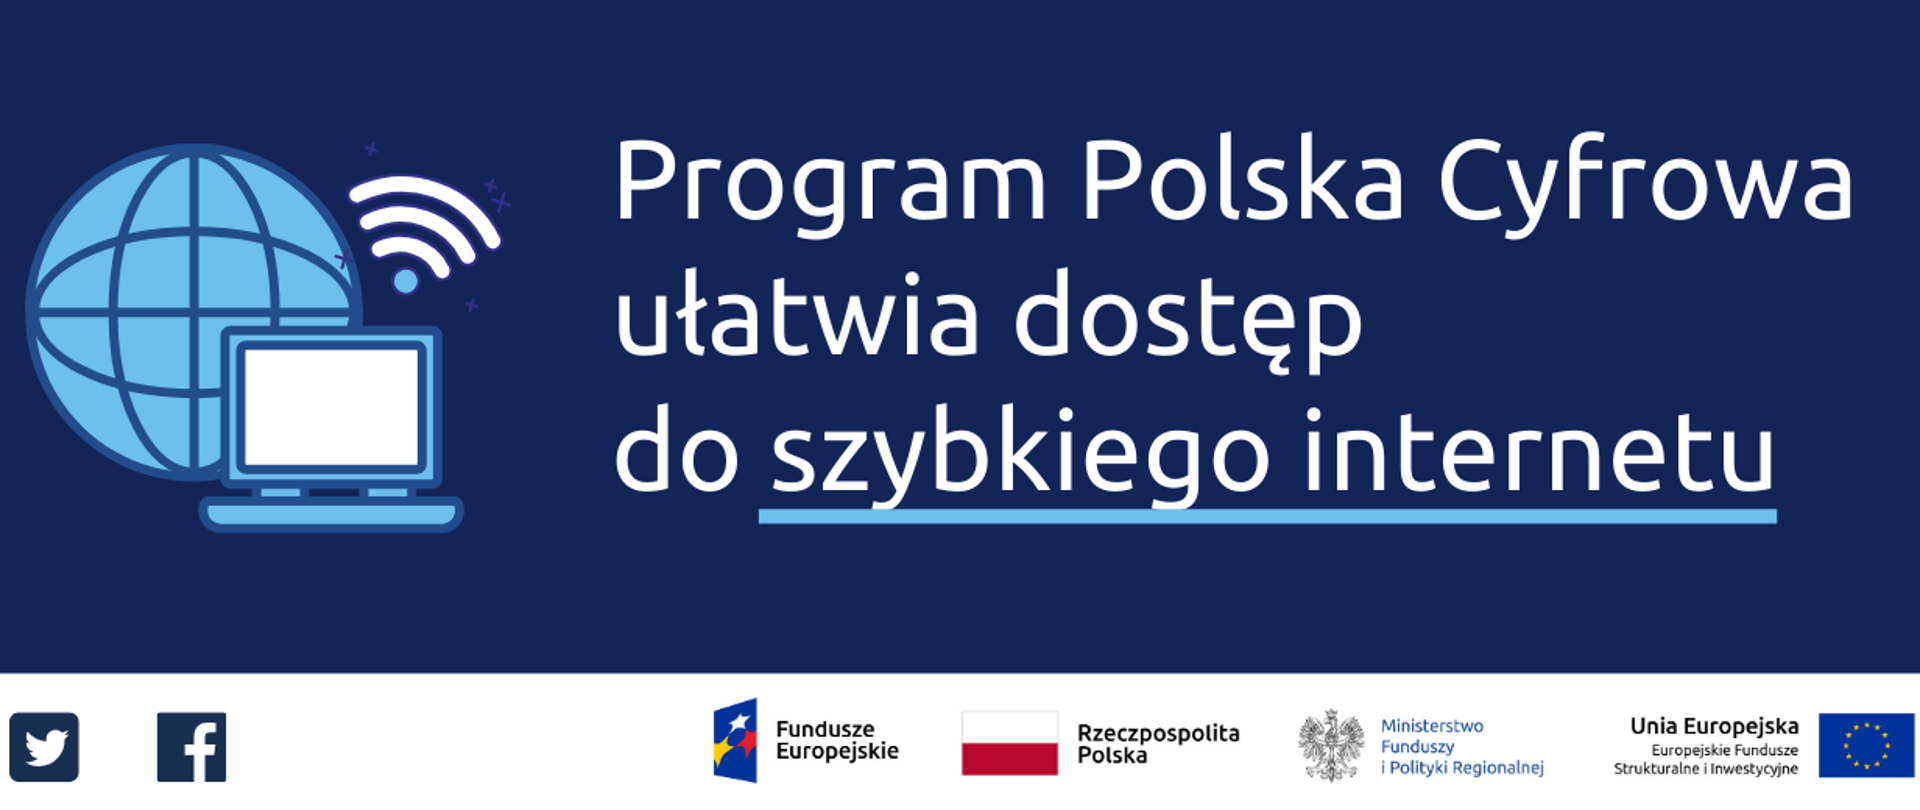 Program Polska Cyfrowa ułatwia dostęp do szybkiego internetu. Na dole ikonki Facebooka oraz Twittera, logotypy Funduszy Europejskich i Ministerstwa Funduszy i Polityki Regionalnej, flaga Polski.